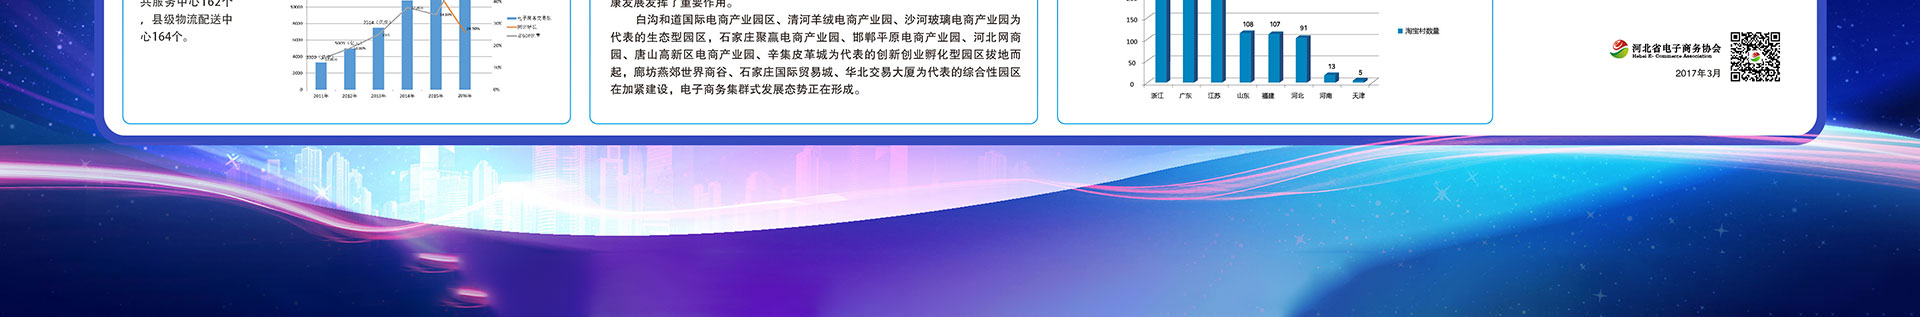 河北省电子商务示范园区、企业版图VR库 - jpg